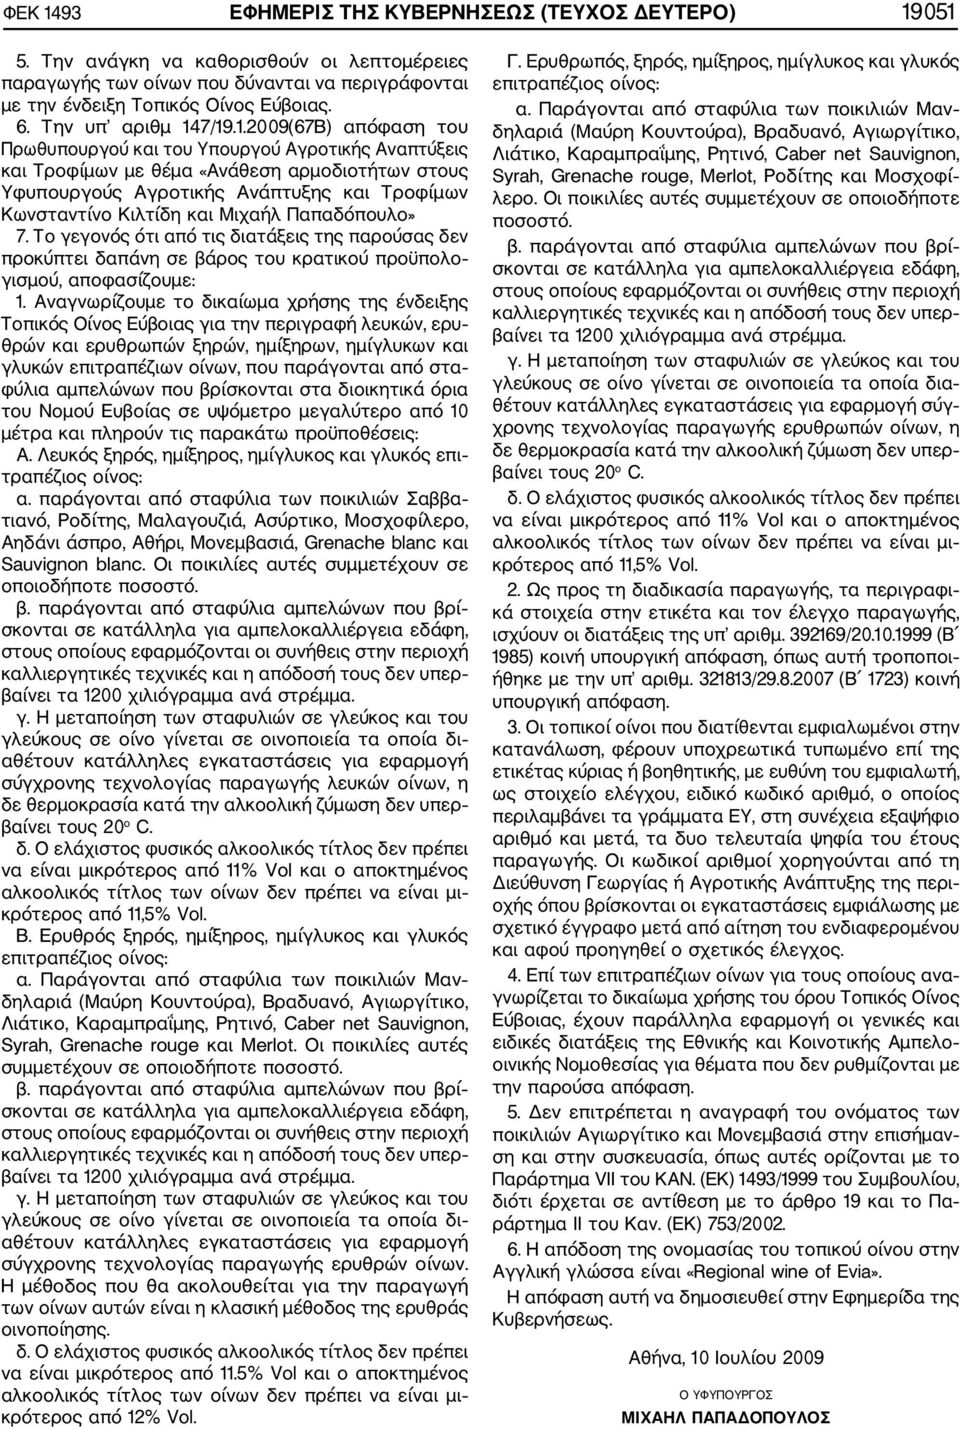 7/19.1.2009(67Β) απόφαση του Πρωθυπουργού και του Υπουργού Αγροτικής Αναπτύξεις και Τροφίμων με θέμα «Ανάθεση αρμοδιοτήτων στους Υφυπουργούς Αγροτικής Ανάπτυξης και Τροφίμων Κωνσταντίνο Κιλτίδη και